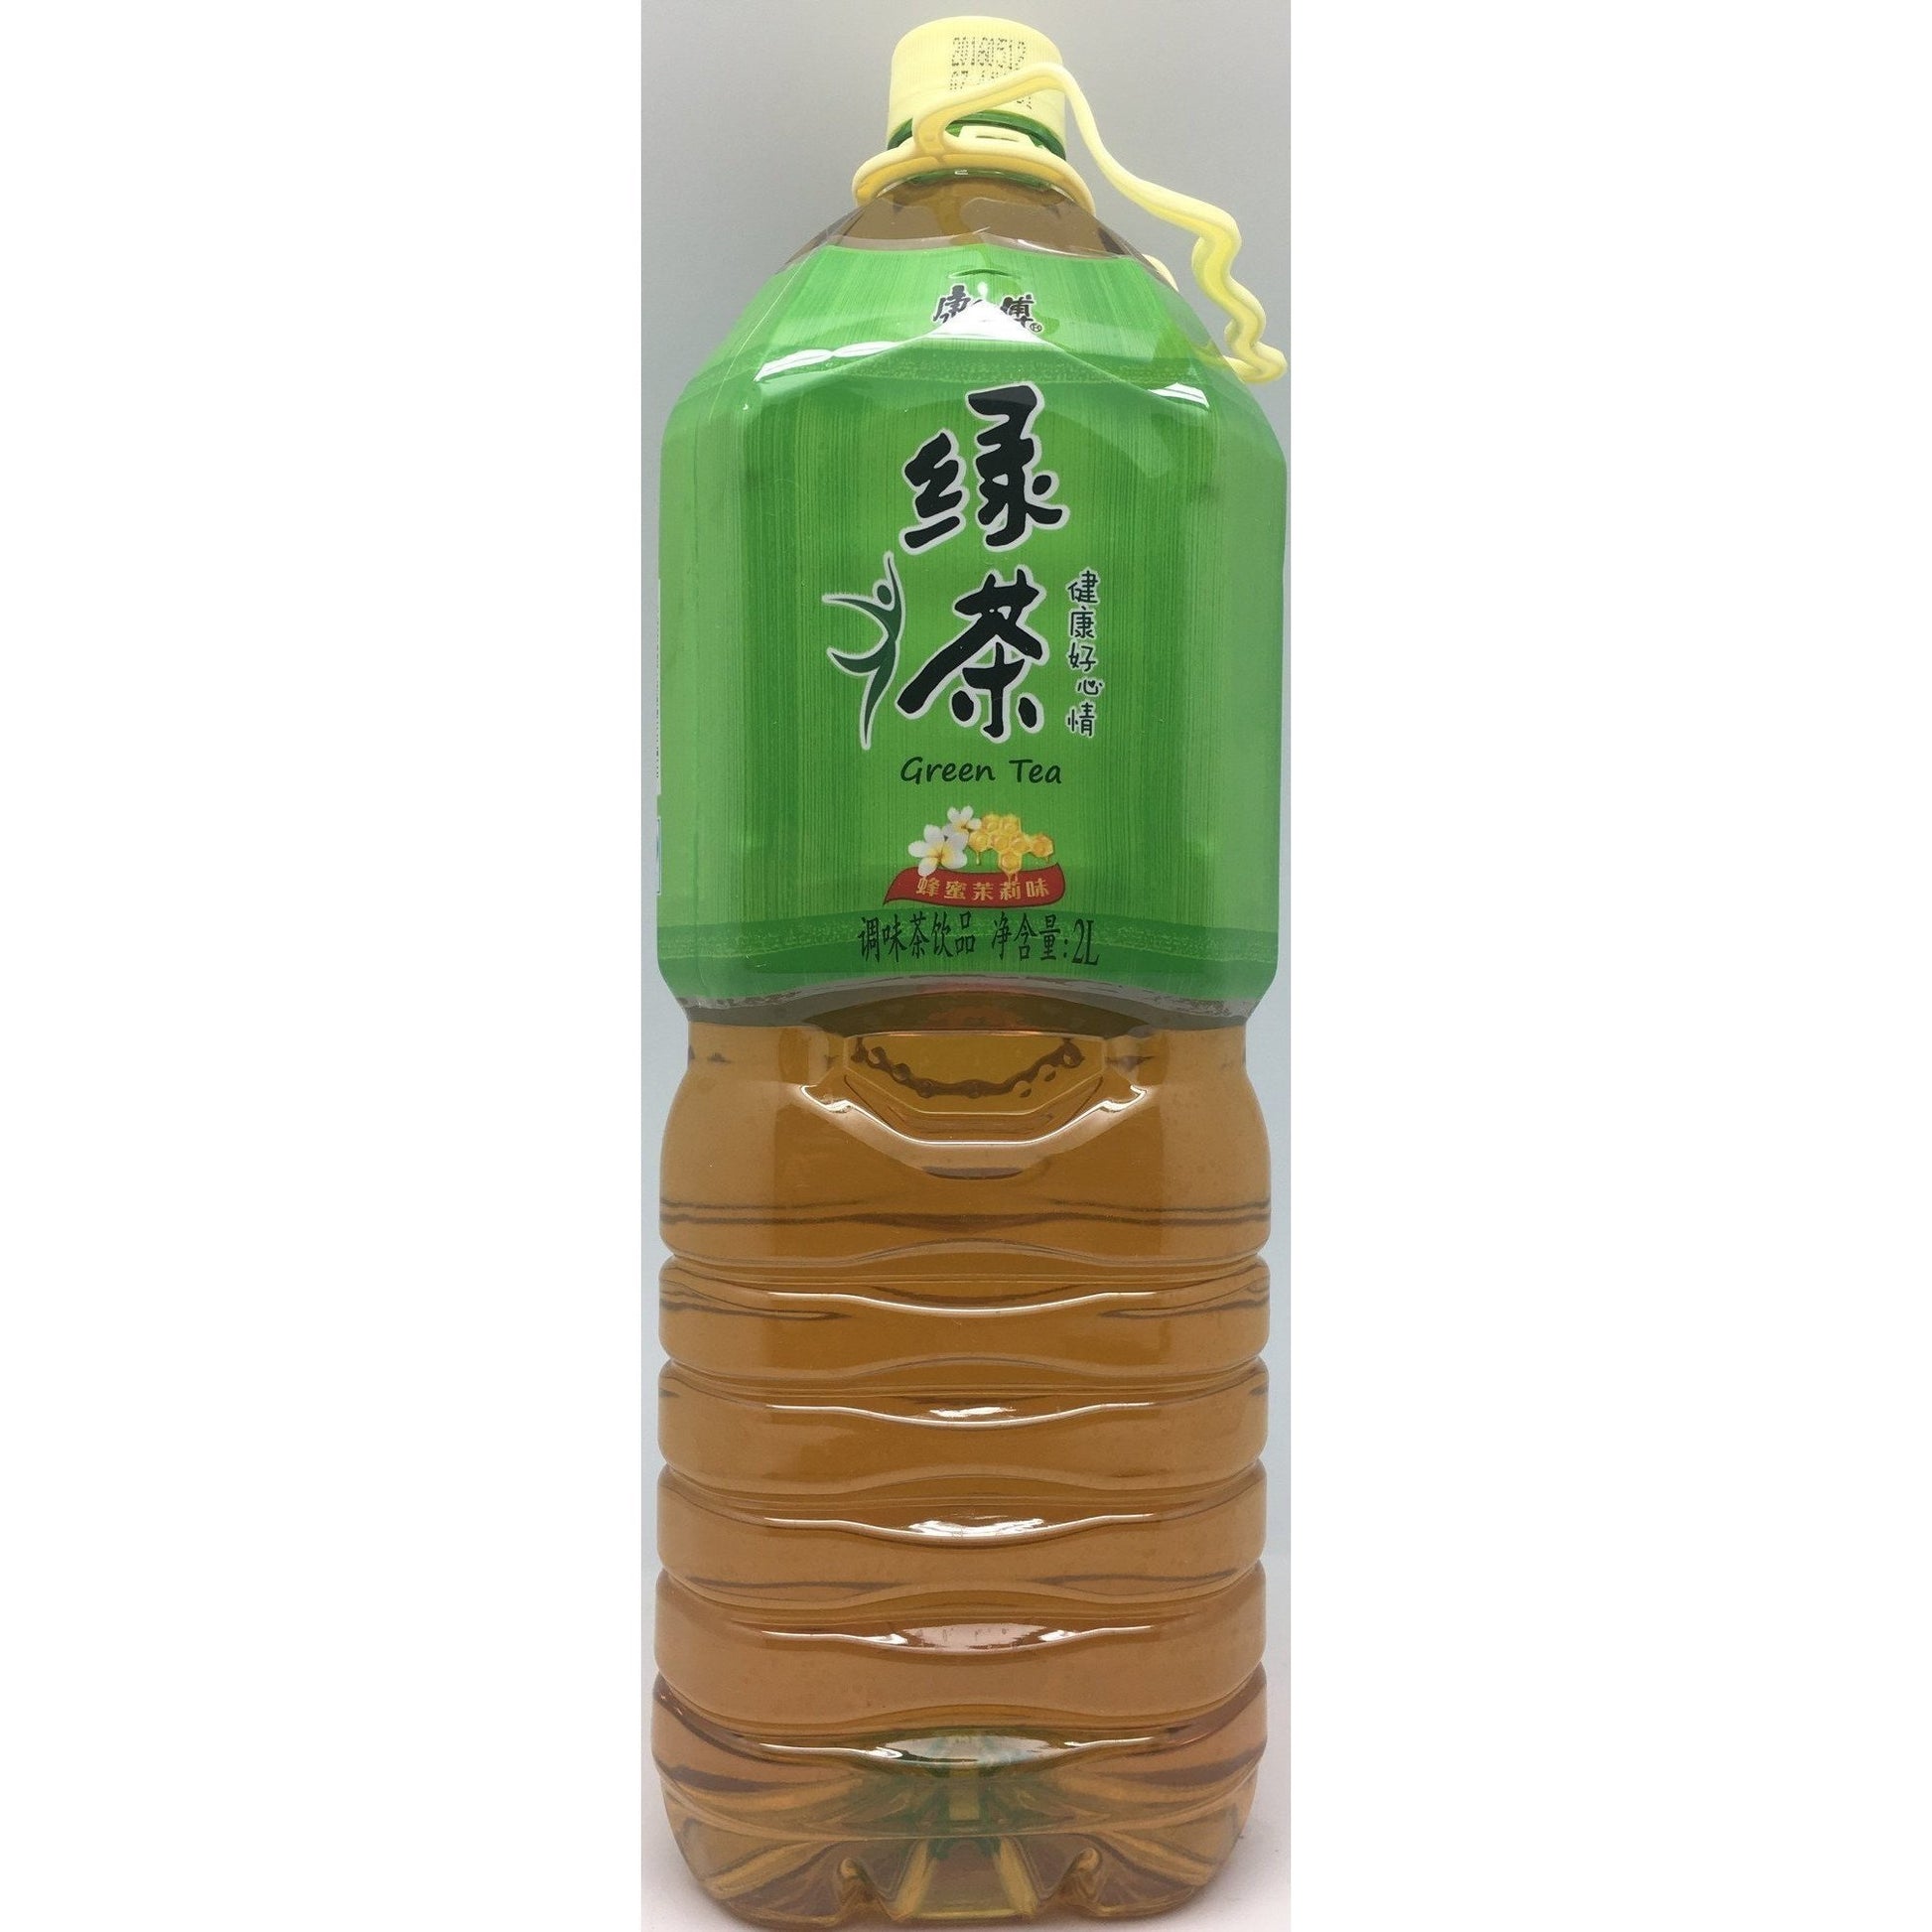 B004GX Kon Brand-Ice Green Tea Flavour 2L -6 bot/1 ctn - New Eastland Pty Ltd - Asian food wholesalers